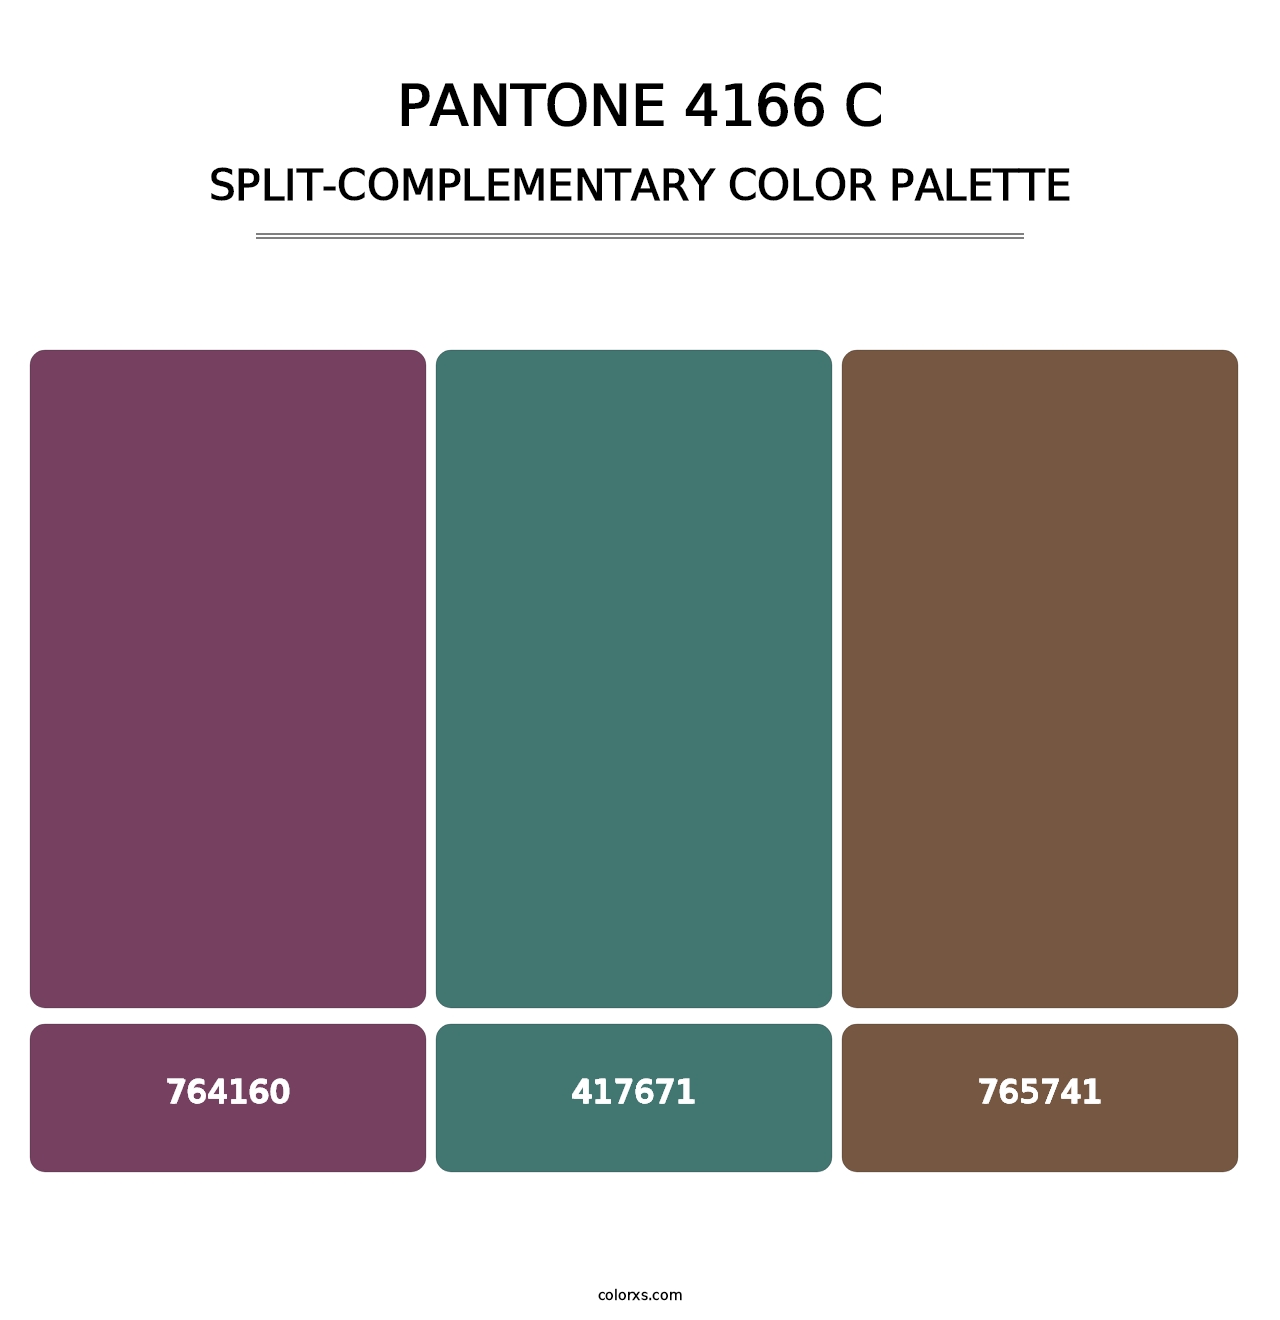 PANTONE 4166 C - Split-Complementary Color Palette